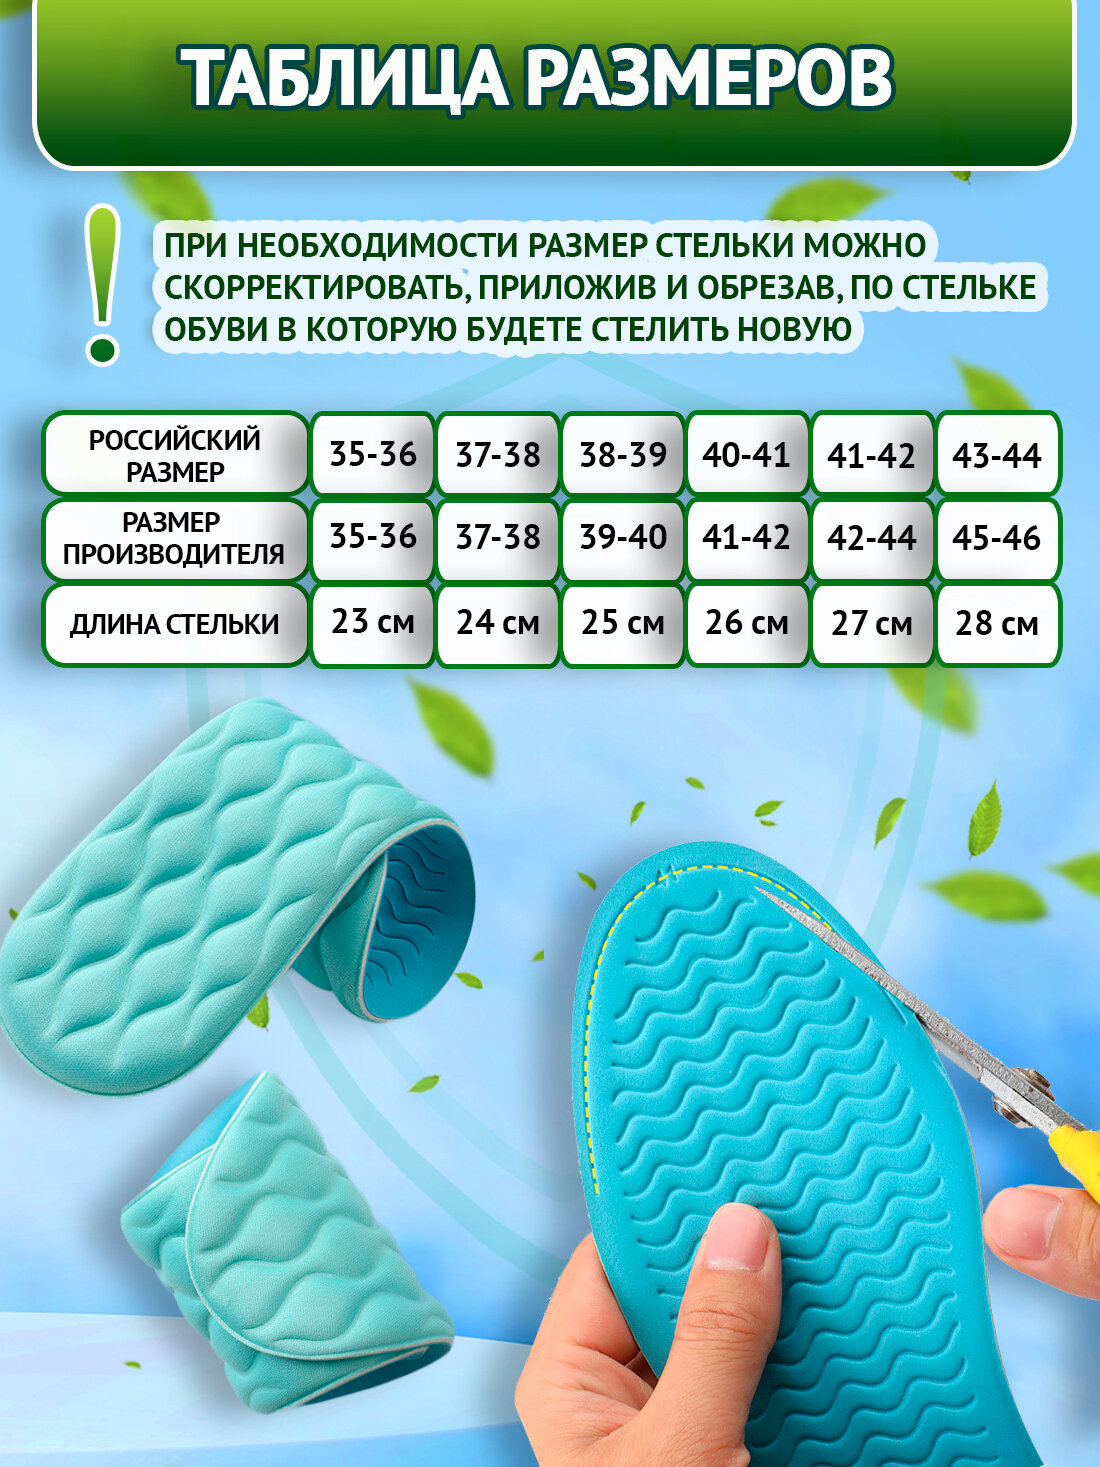 Стельки для обуви мягкие дышащие амортизрующие Super Feet Размер 43-44 ( 28 см ) - фотография № 2